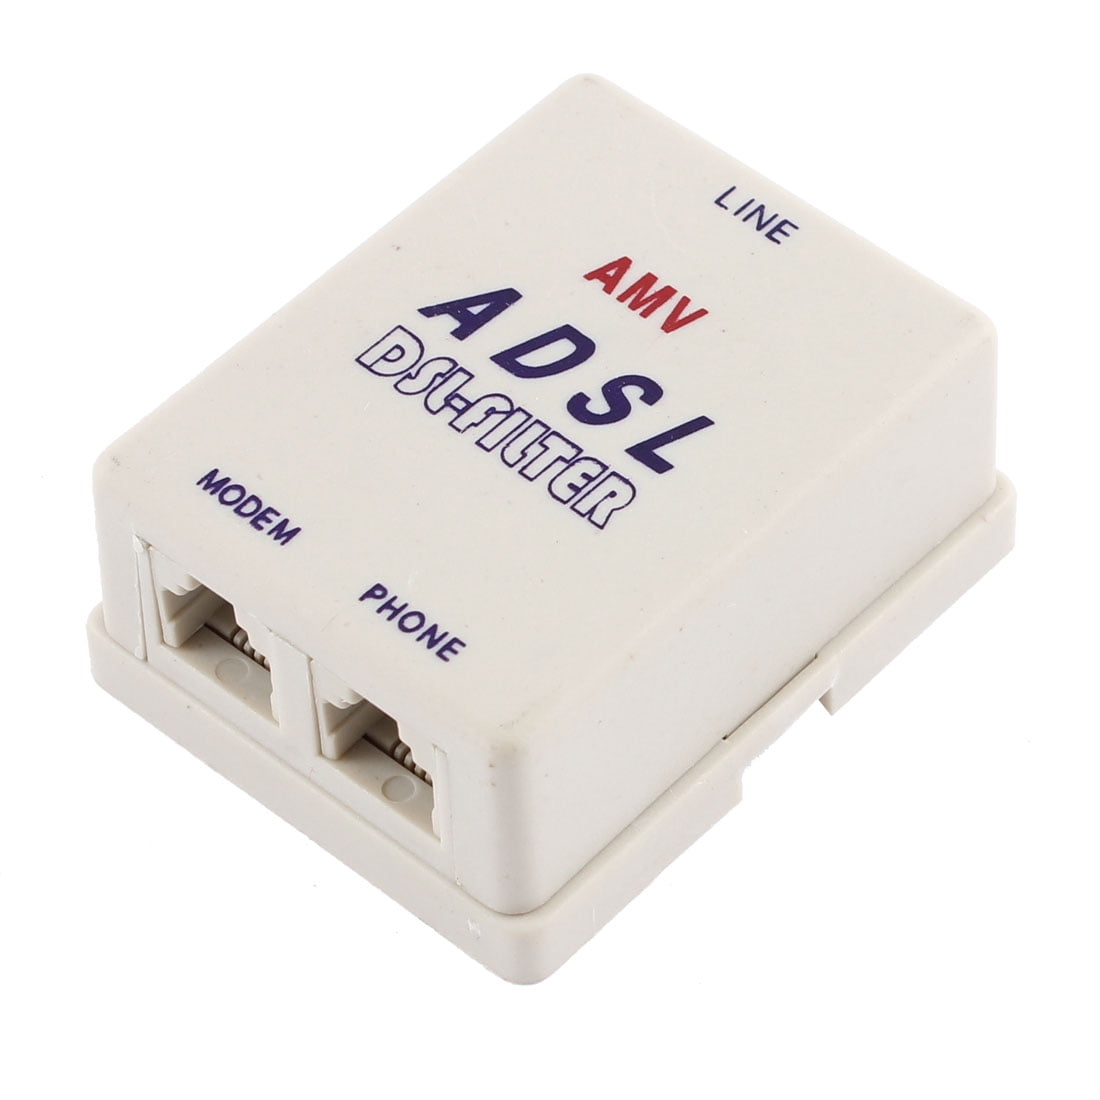 BT431A to1 X RJ11 Enchufe De Teléfono Cable ADSL Adaptador-Conectar ADSL a la línea telefónica 